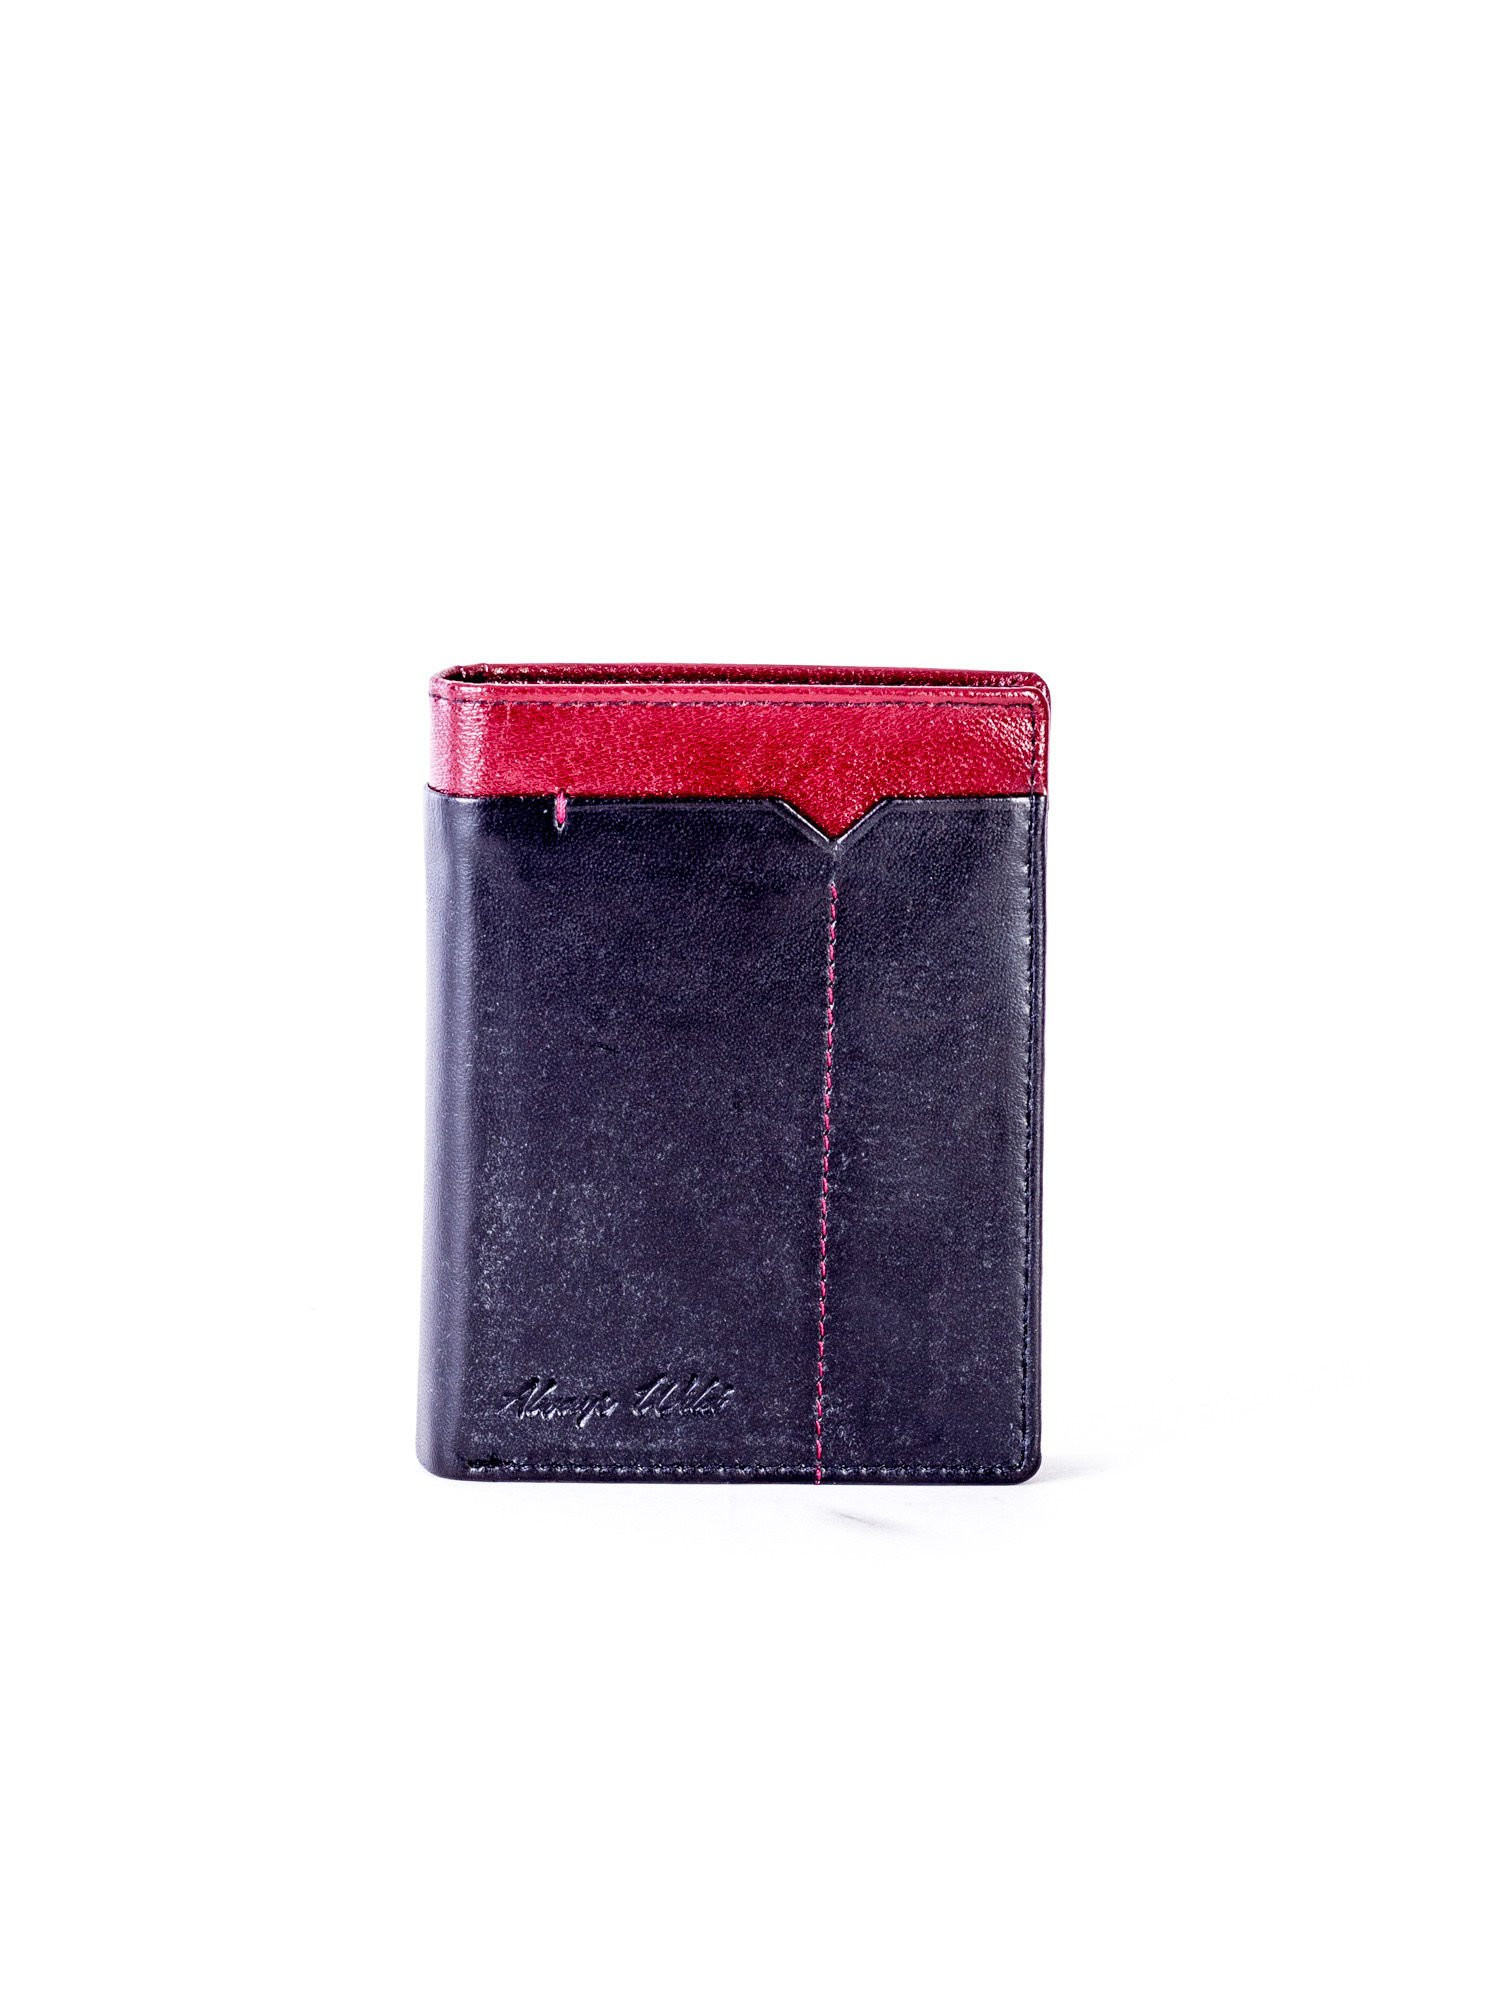 CE PR 326 FS peněženka.74 černá a červená jedna velikost